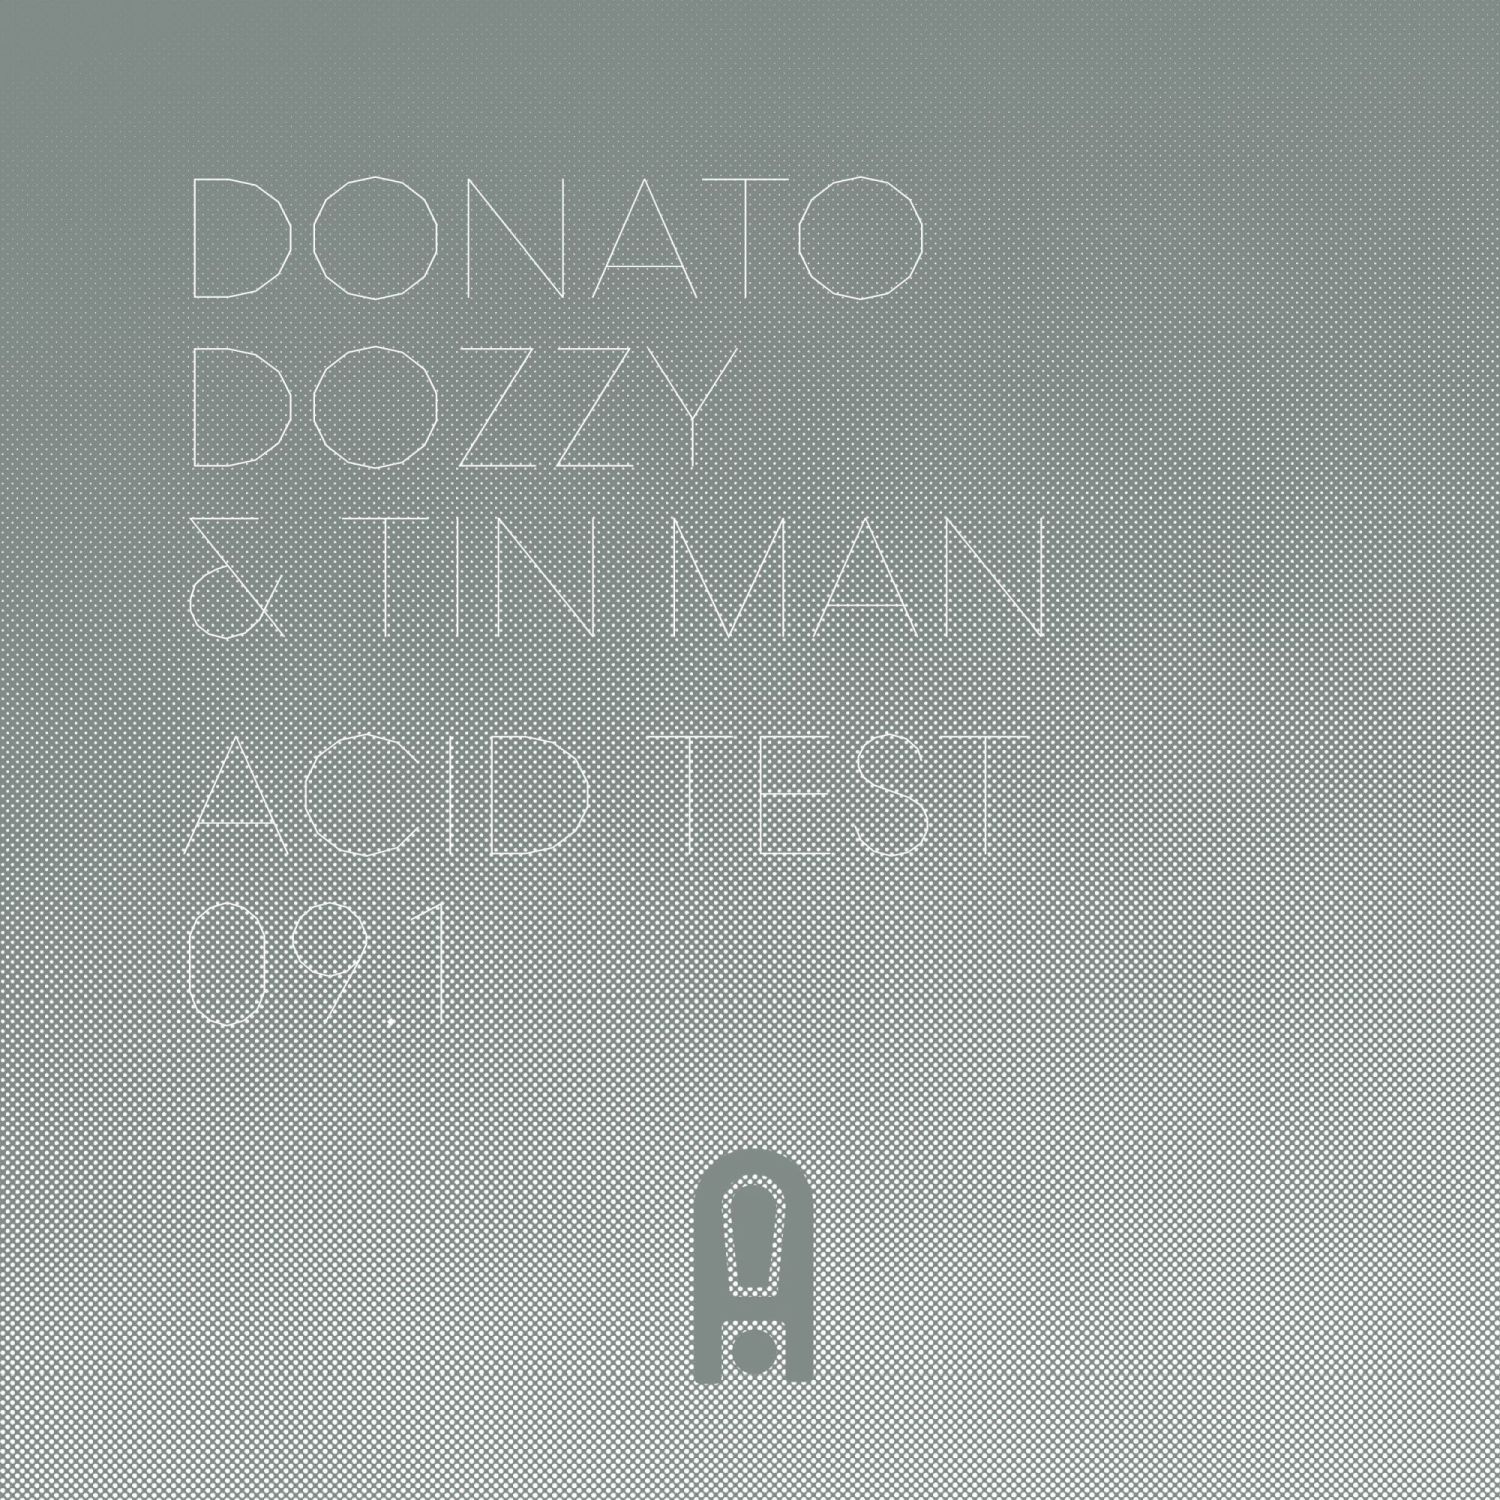 Donato Dozzy & Tin Man/ACID TEST 9.1 12"